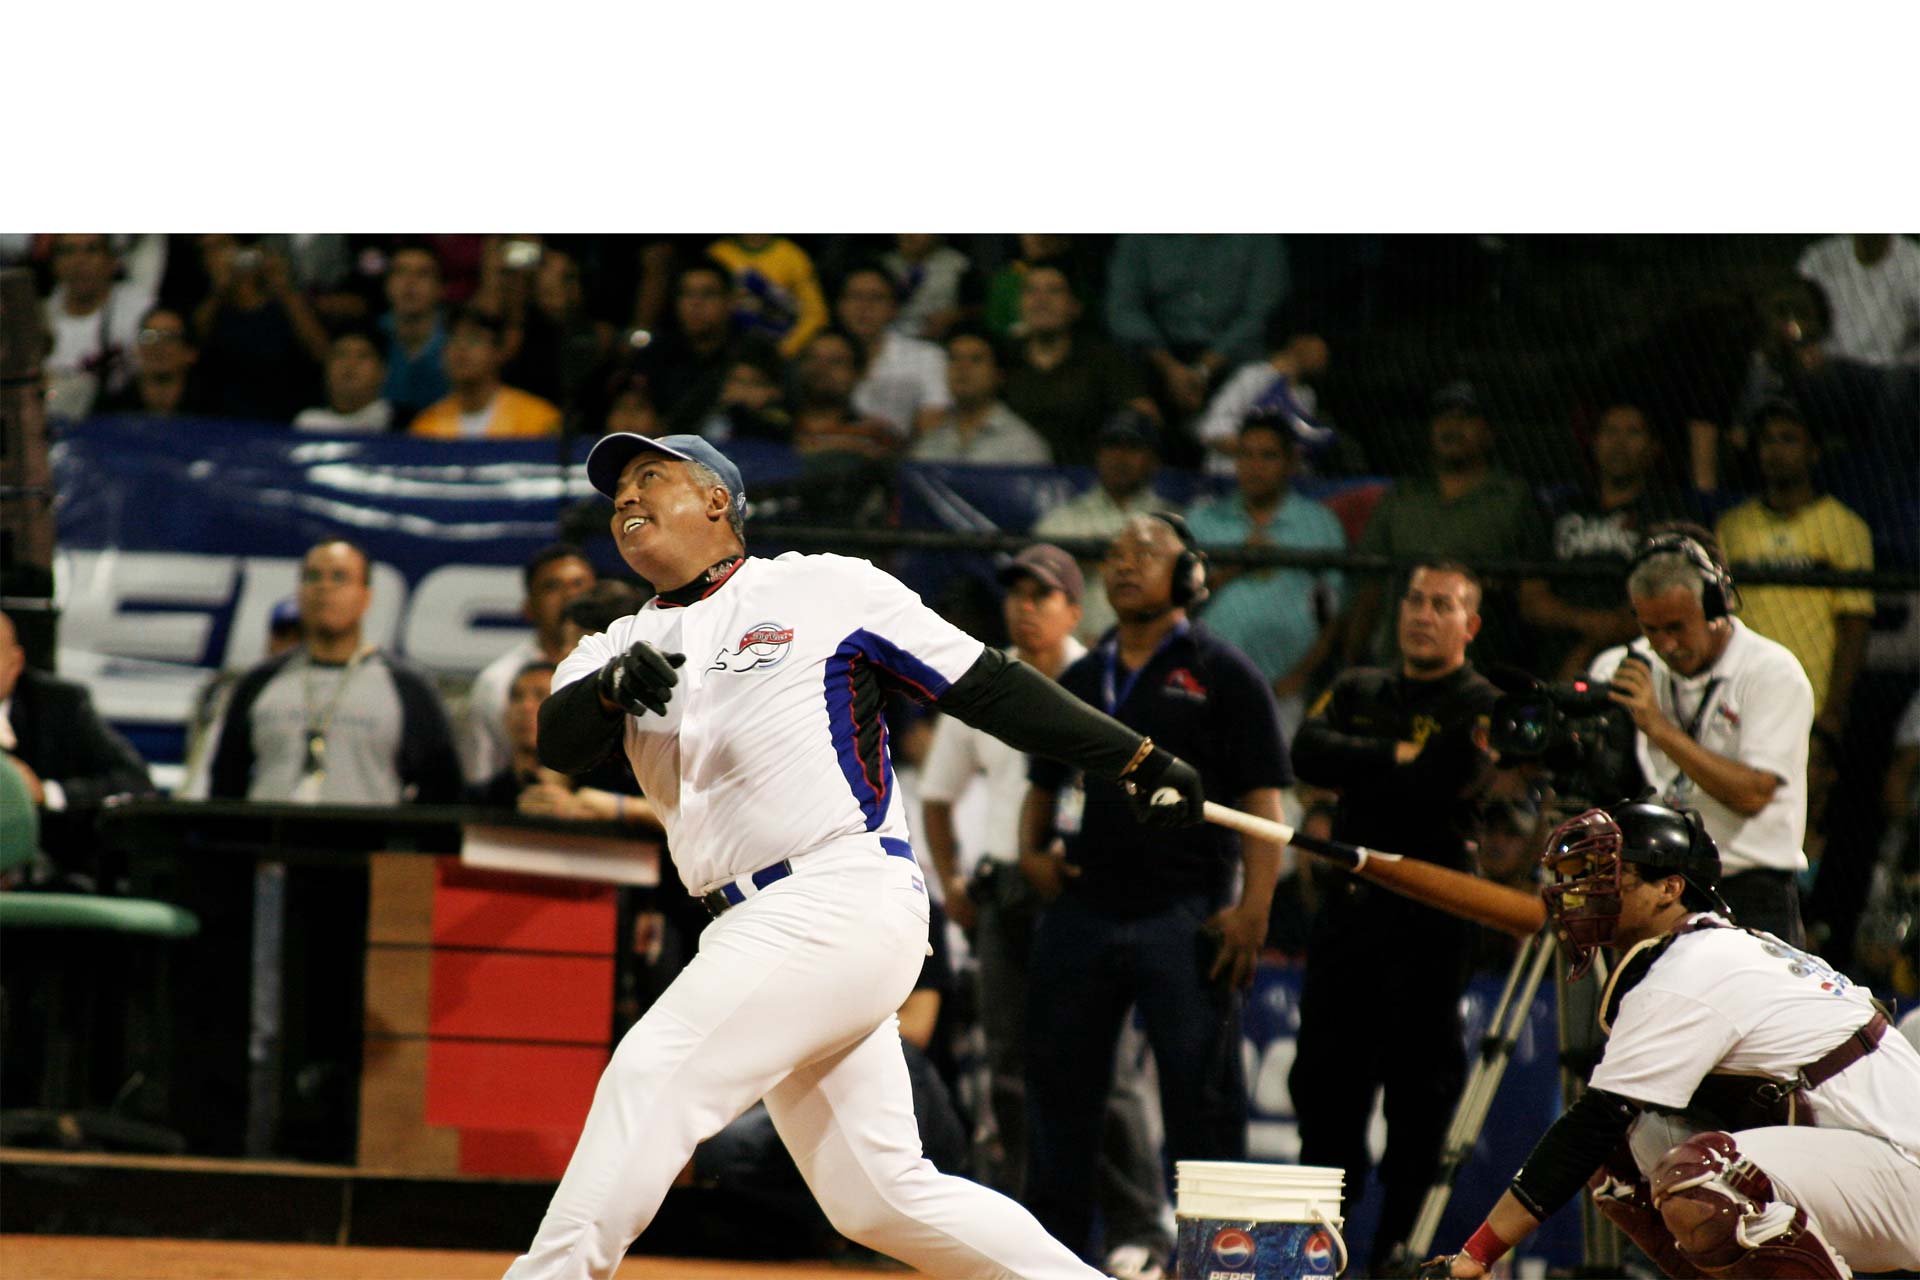 Andrés Galarraga, uno de los mejores beisbolistas de la historia de Venezuela, cumple 55 años